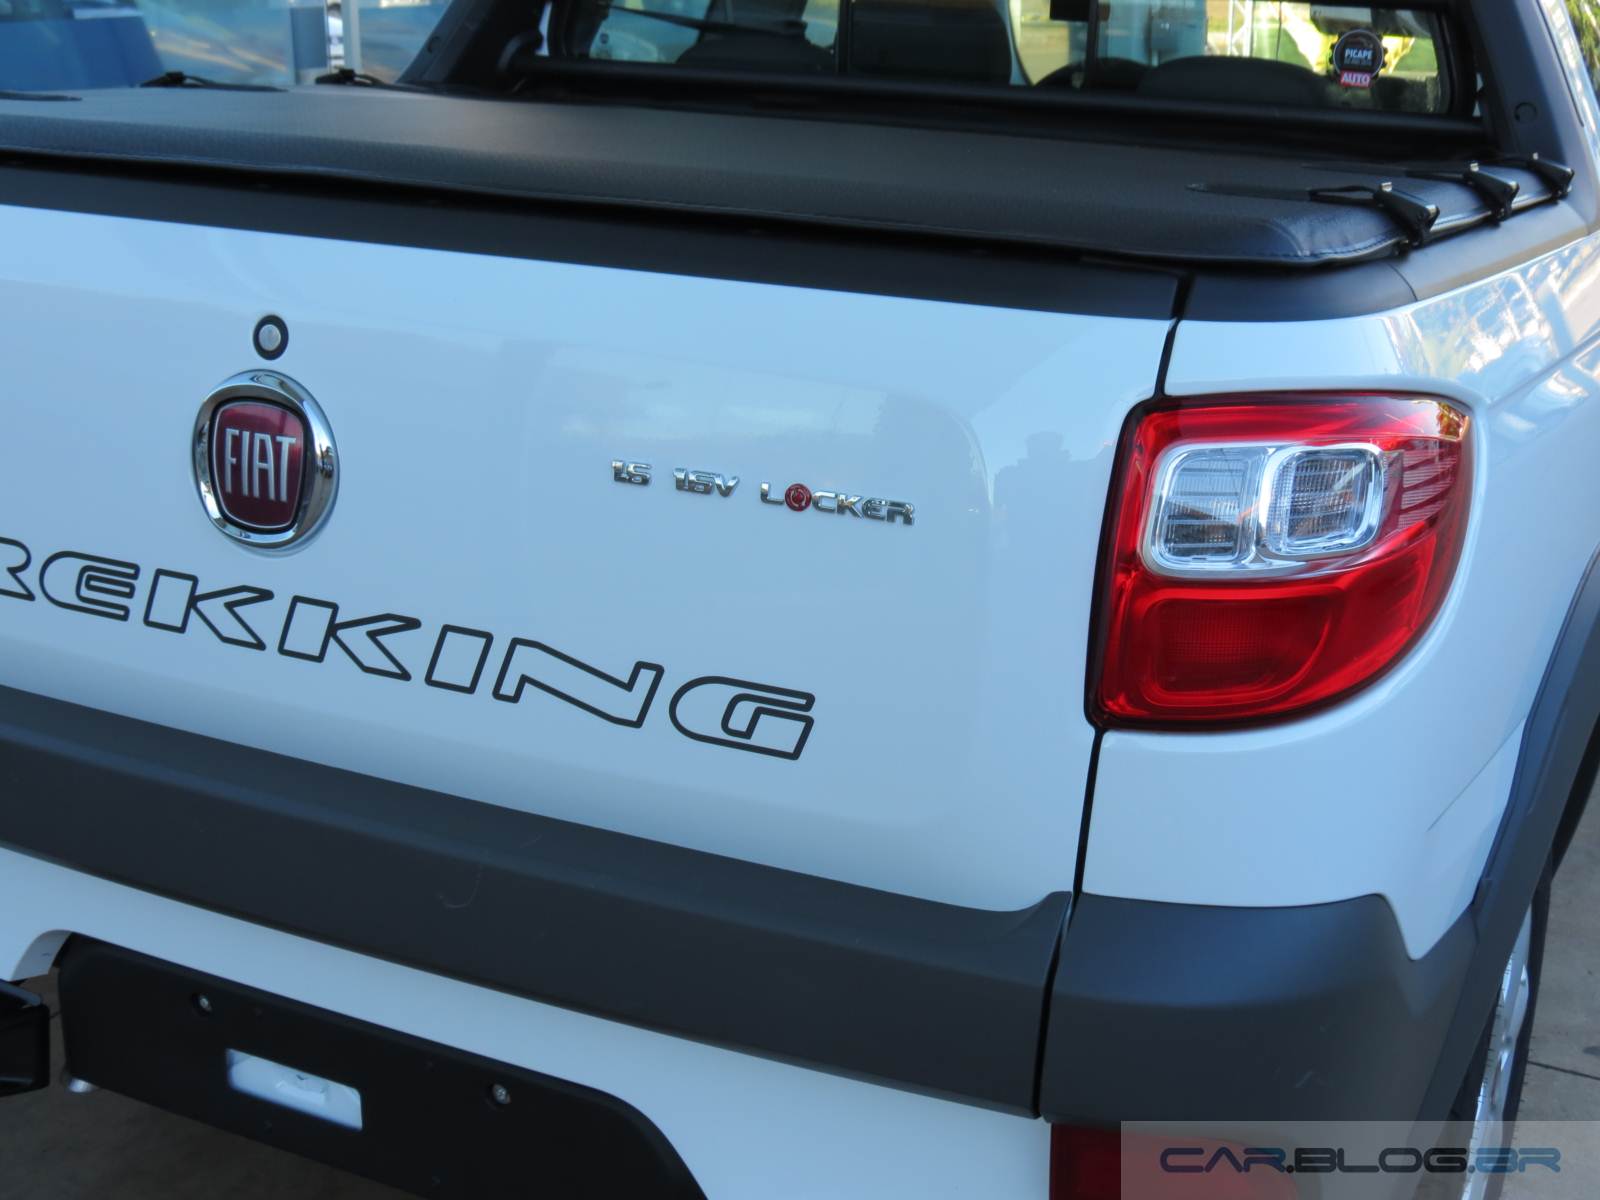 Fiat Strada Trekking 2015 - sistema Locker